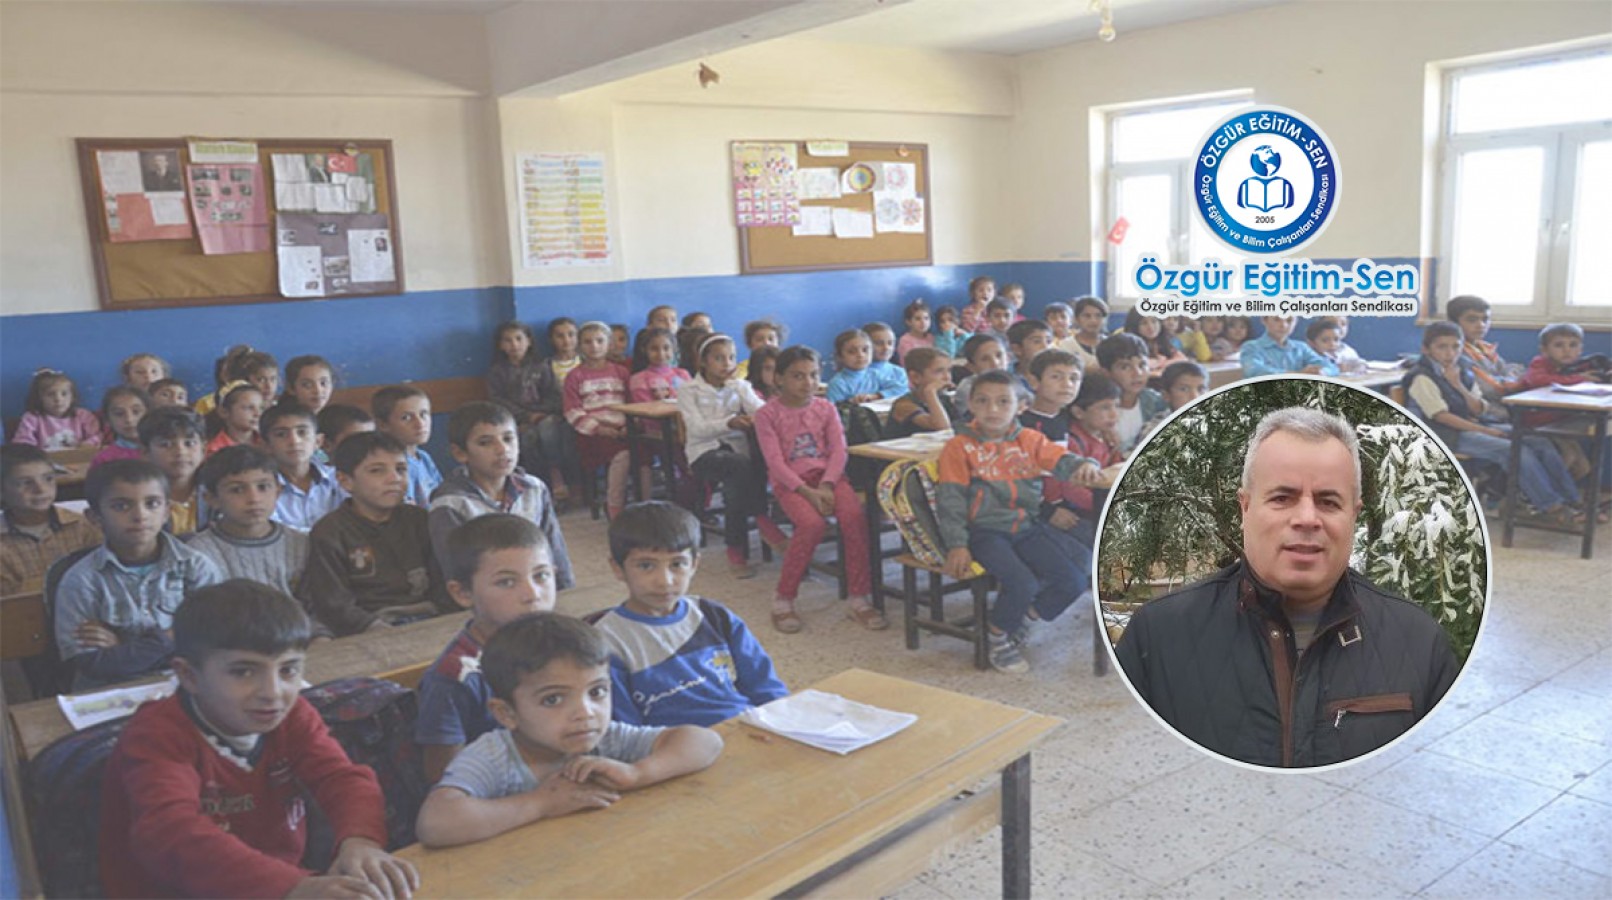 Eğitim sendikasından Urfa'da eğitimin iyileştirilmesi için önerileri